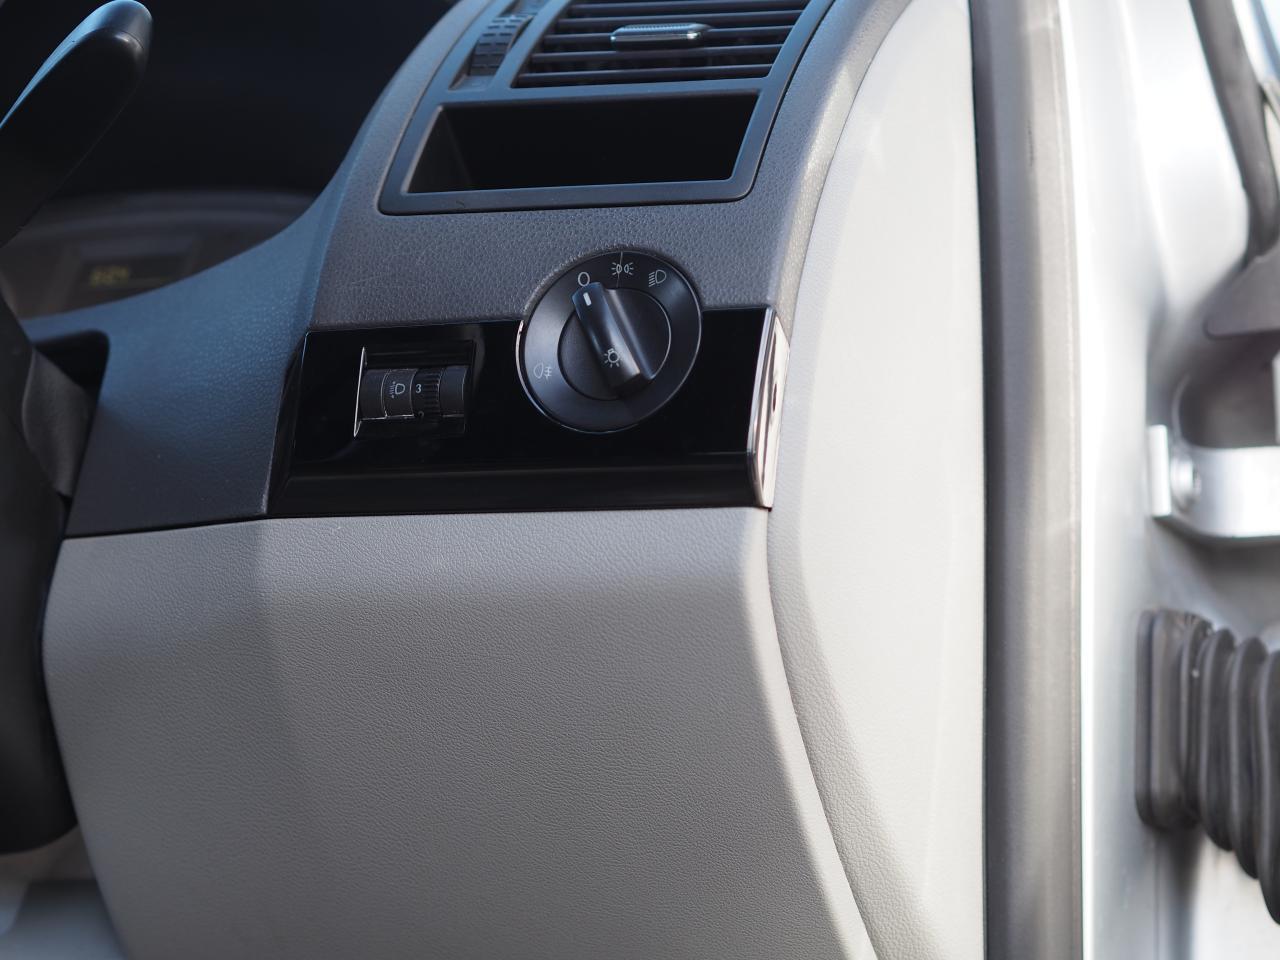 Kit styling completo per interni VW T5.1 Transporter Comfort Dash (SOLO guida a destra)